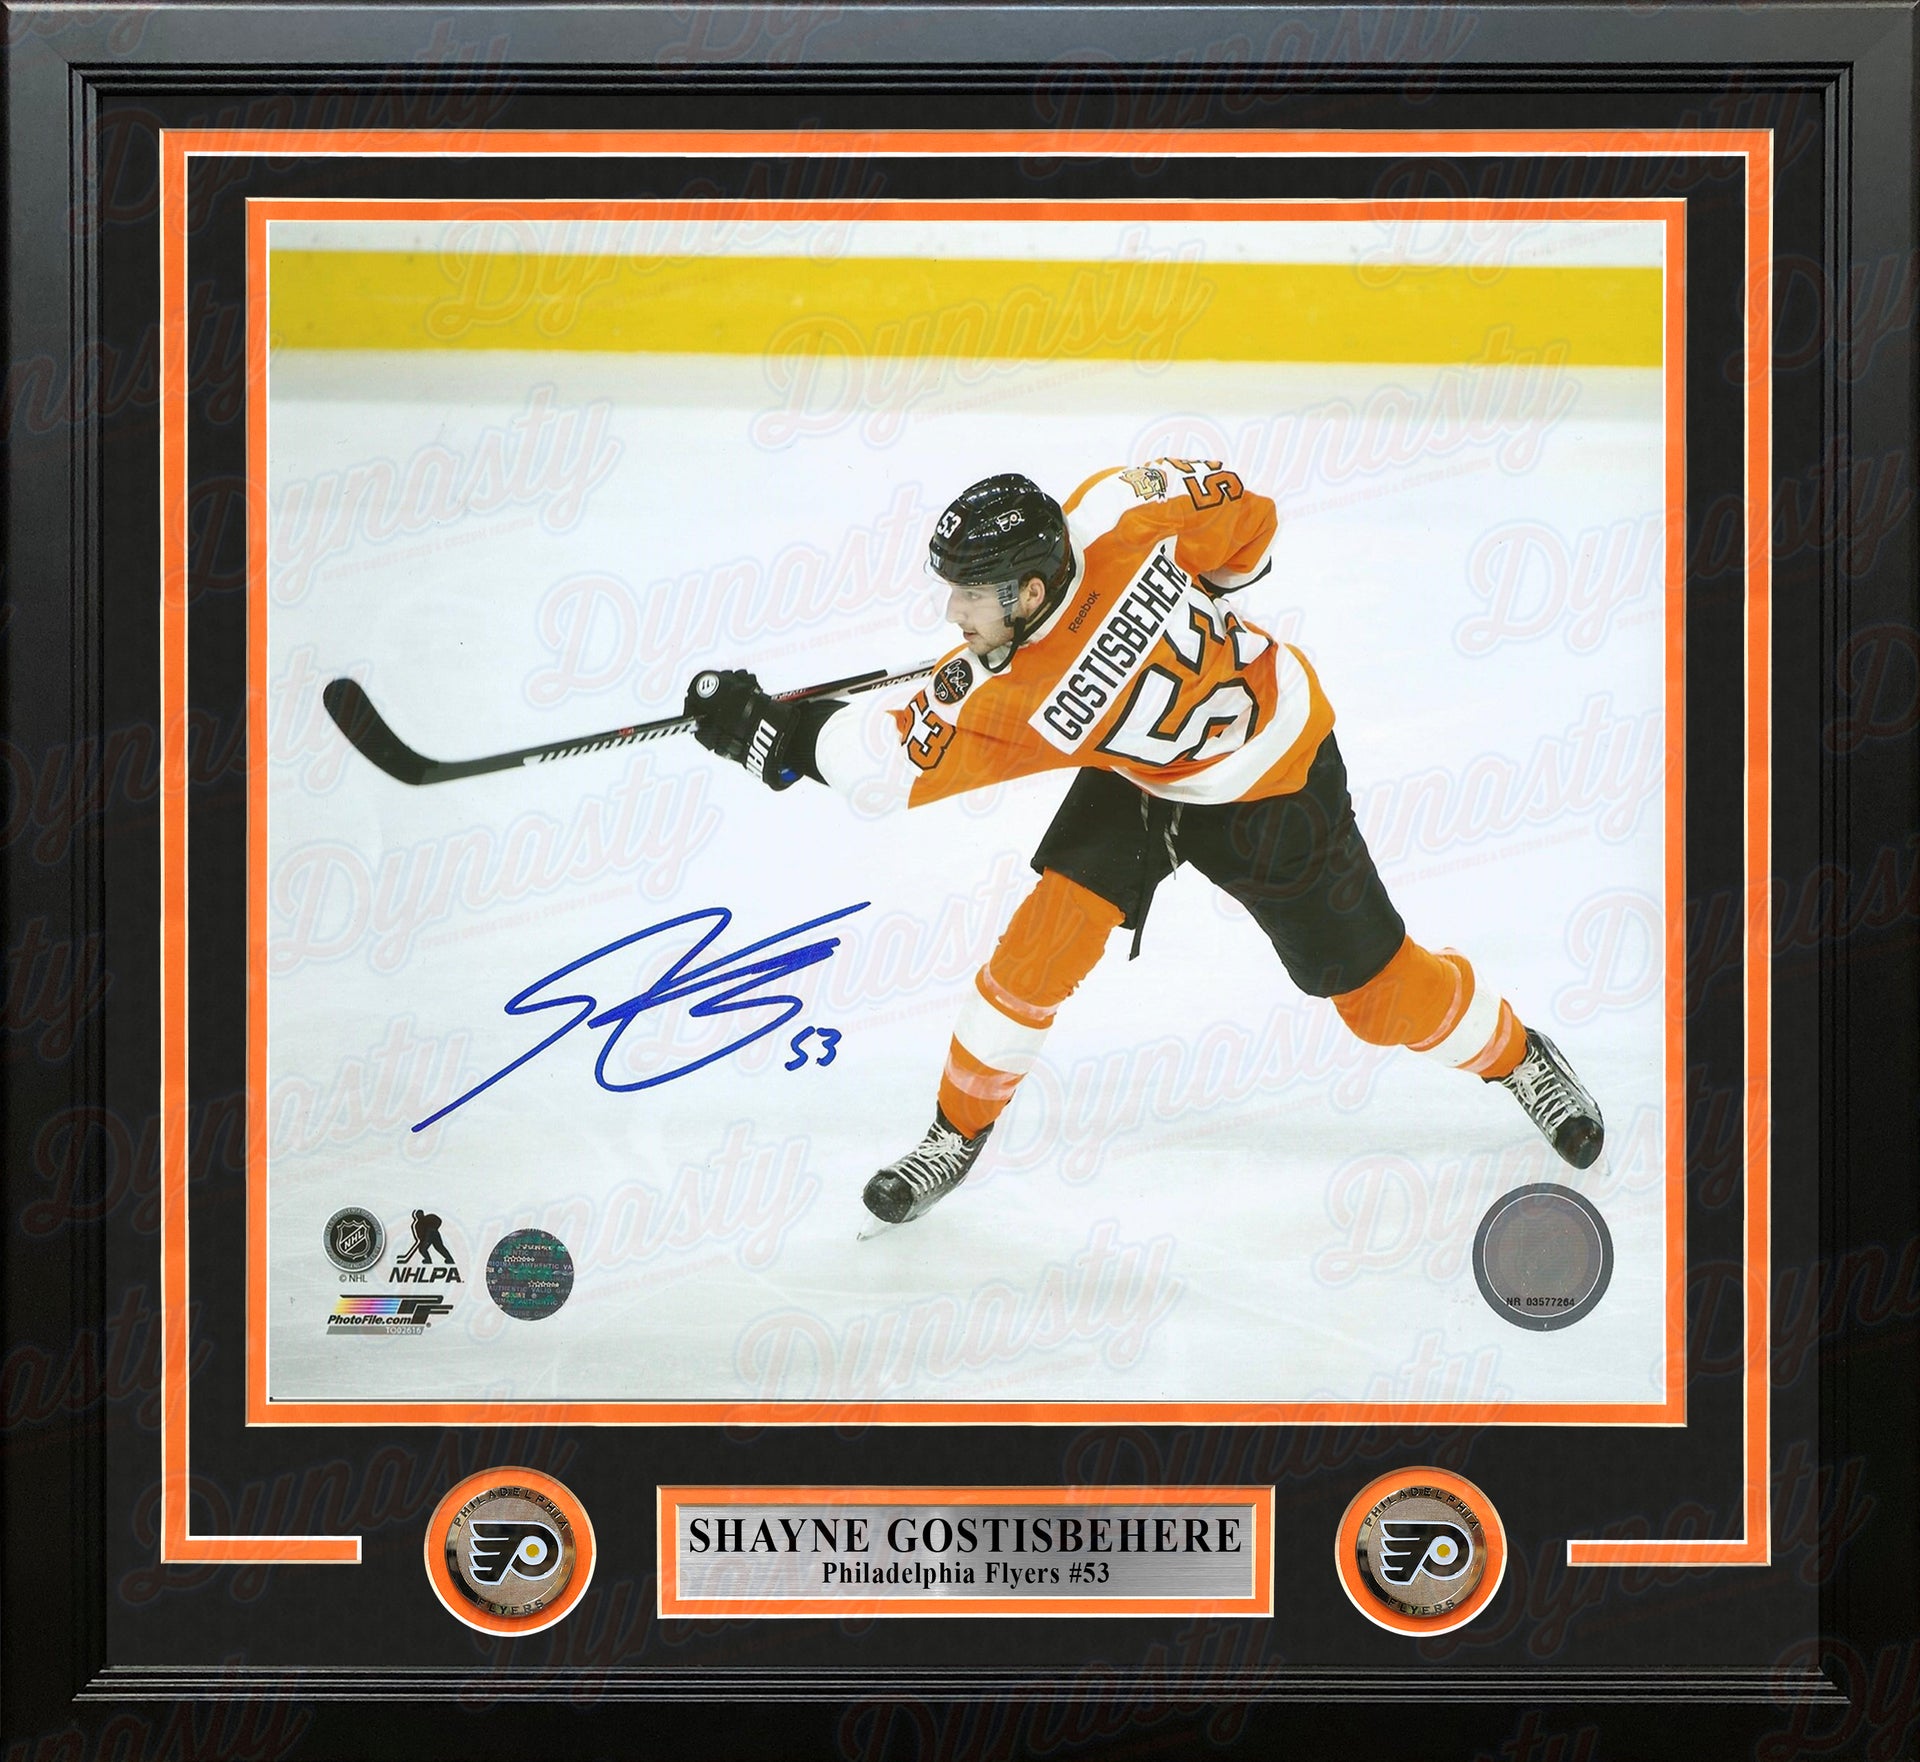 Shayne Gostisbehere Slapshot Philadelphia Flyers Autographed NHL Hockey Framed and Matted Photo - Dynasty Sports & Framing 